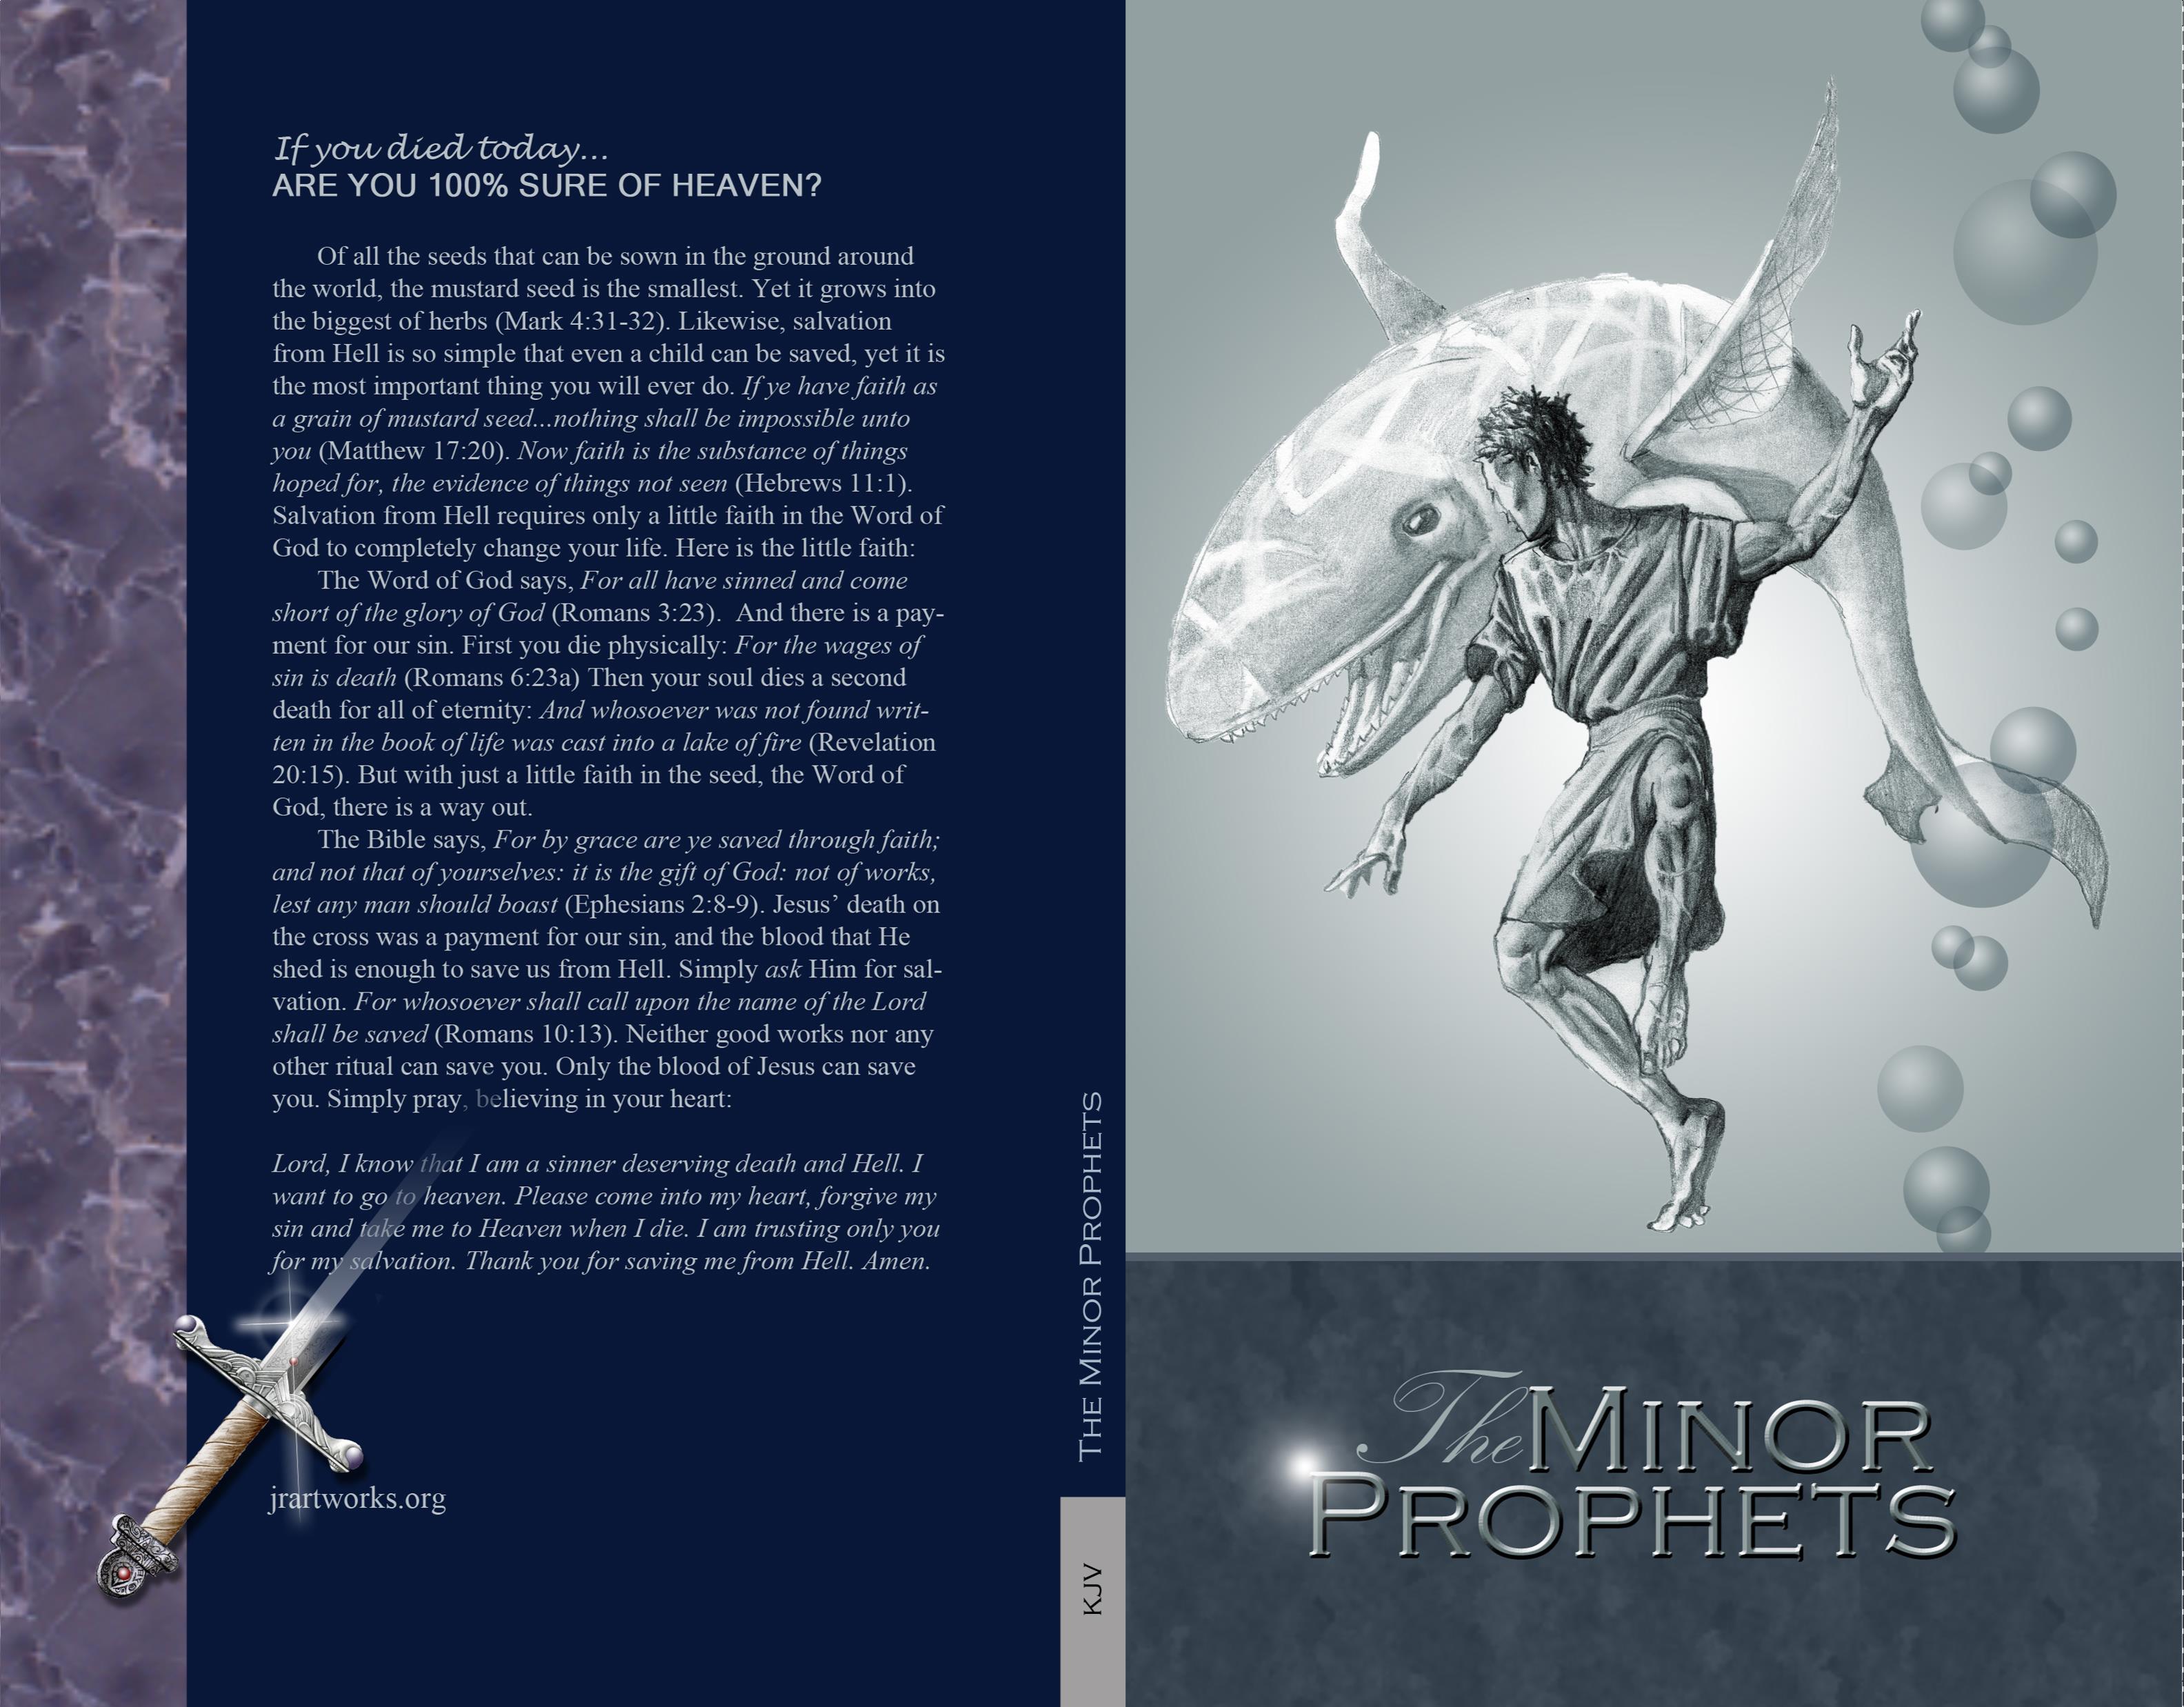 The Minor Prophets - KJV cover image